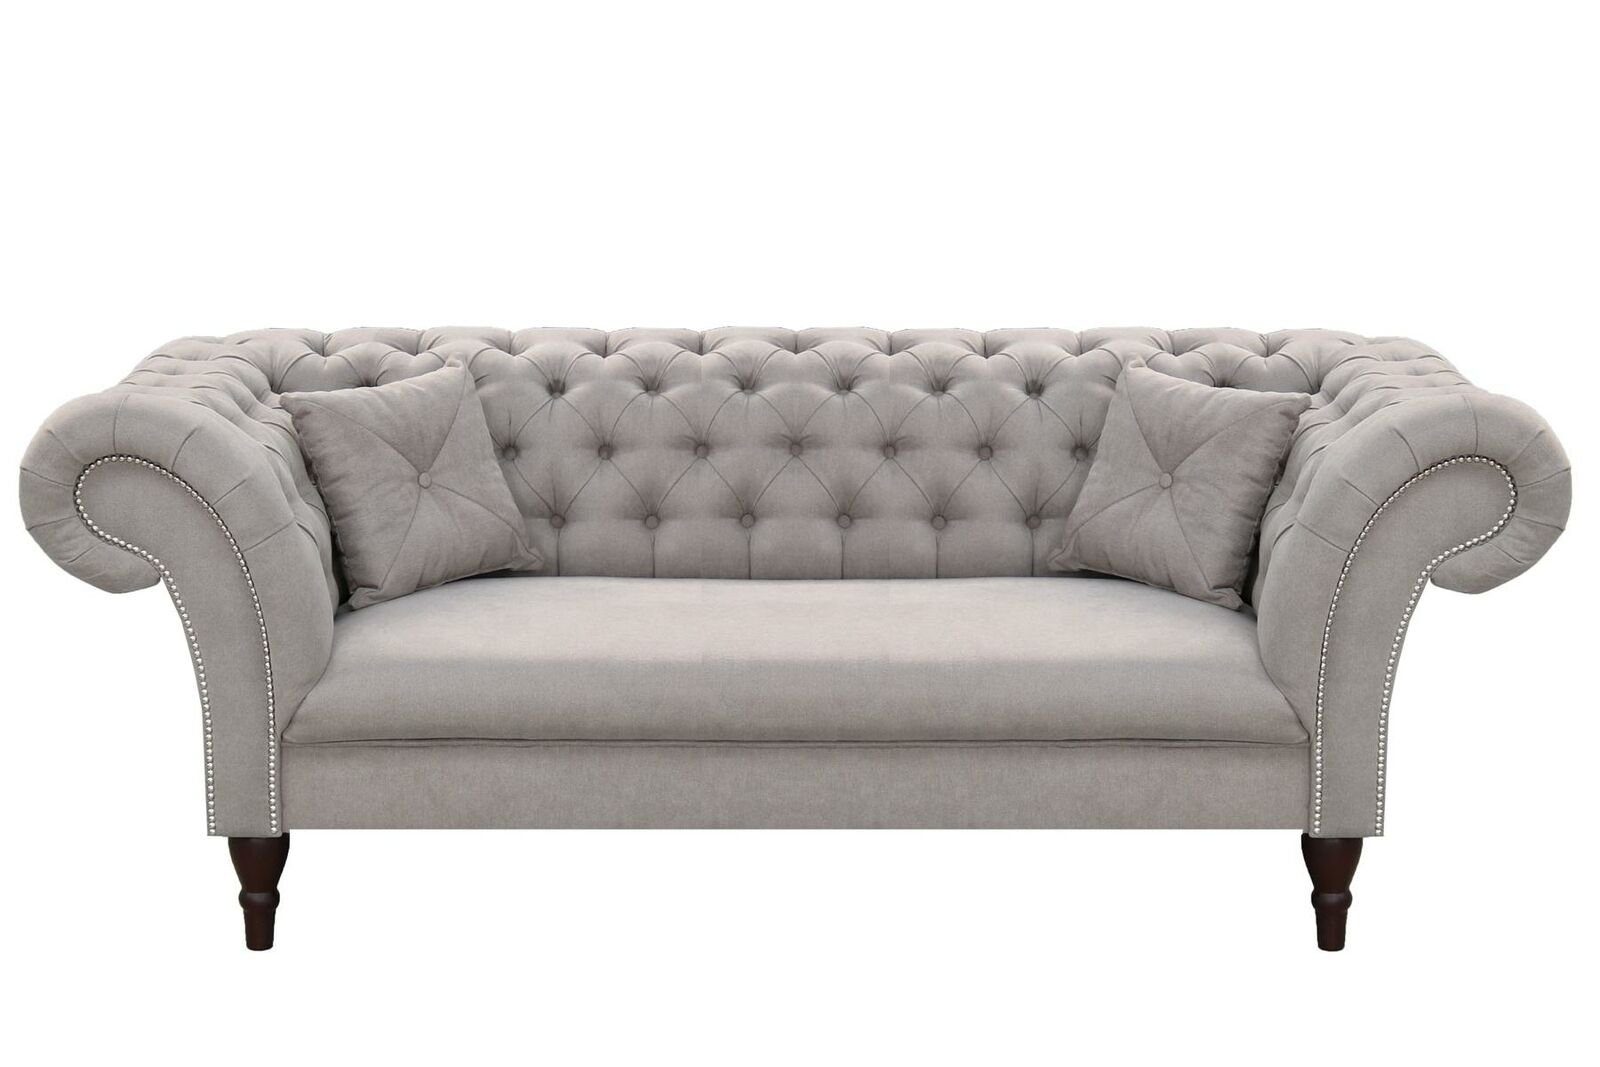 JVmoebel Sofa Grauer Made Brandneu, Chesterfield Couch Design in Luxus 3-er Dreisitzer Europe Möbel